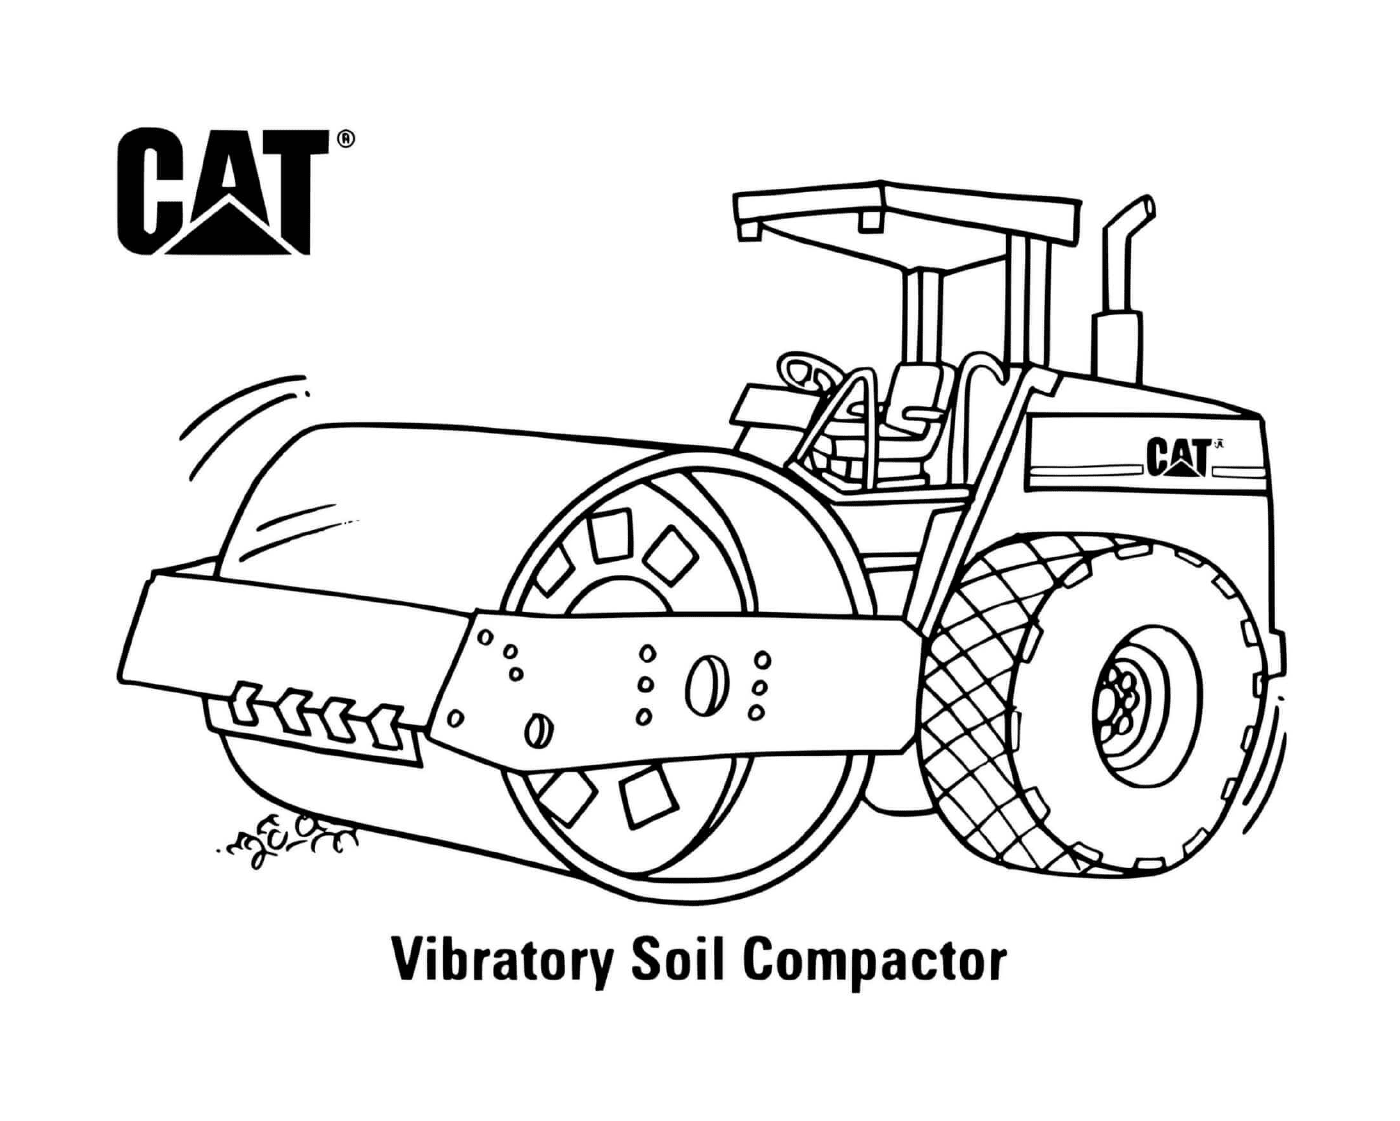  Compactor de suelo vibratorio CAT utilizado en una obra de construcción 